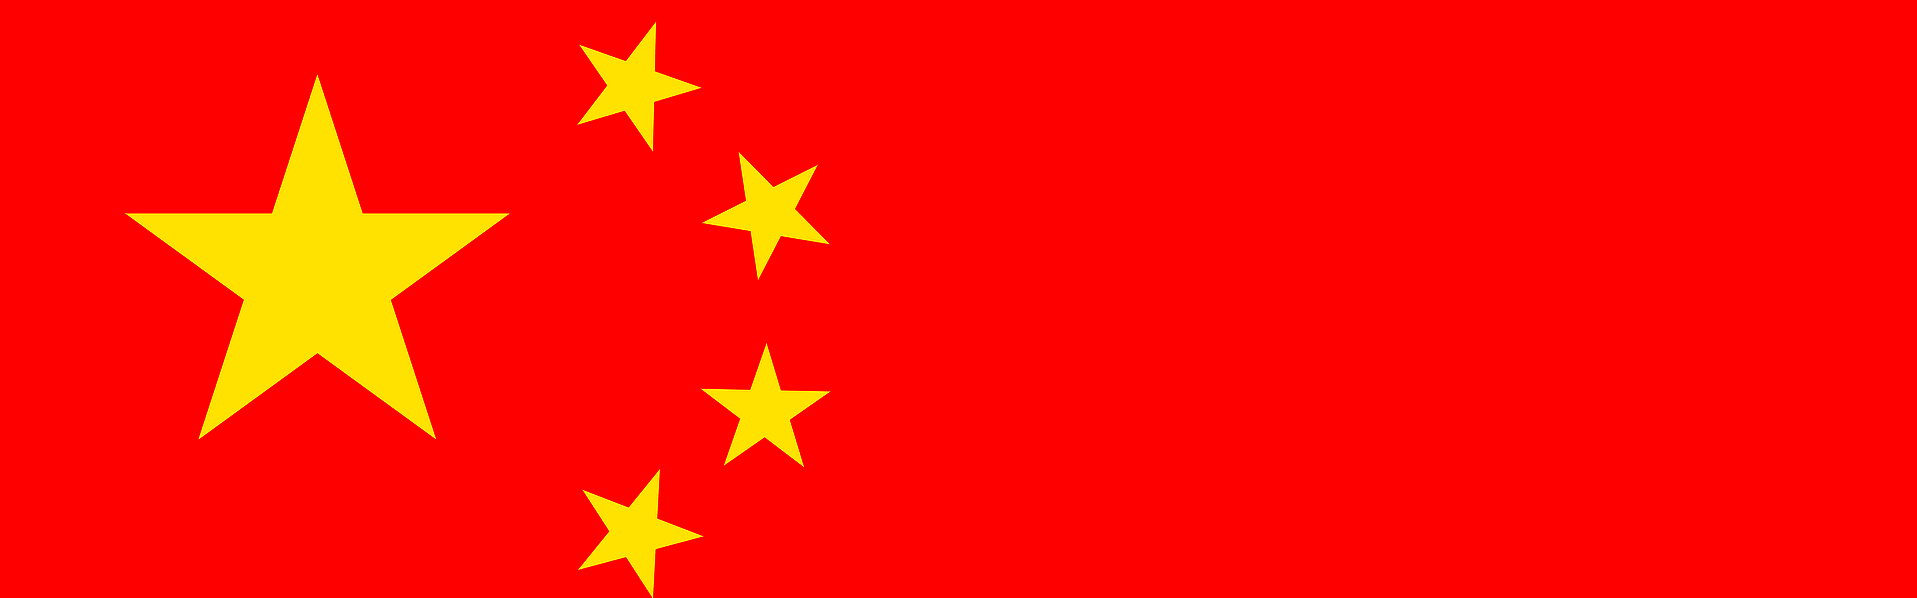 Das Bild zeigt die Flagge Chinas